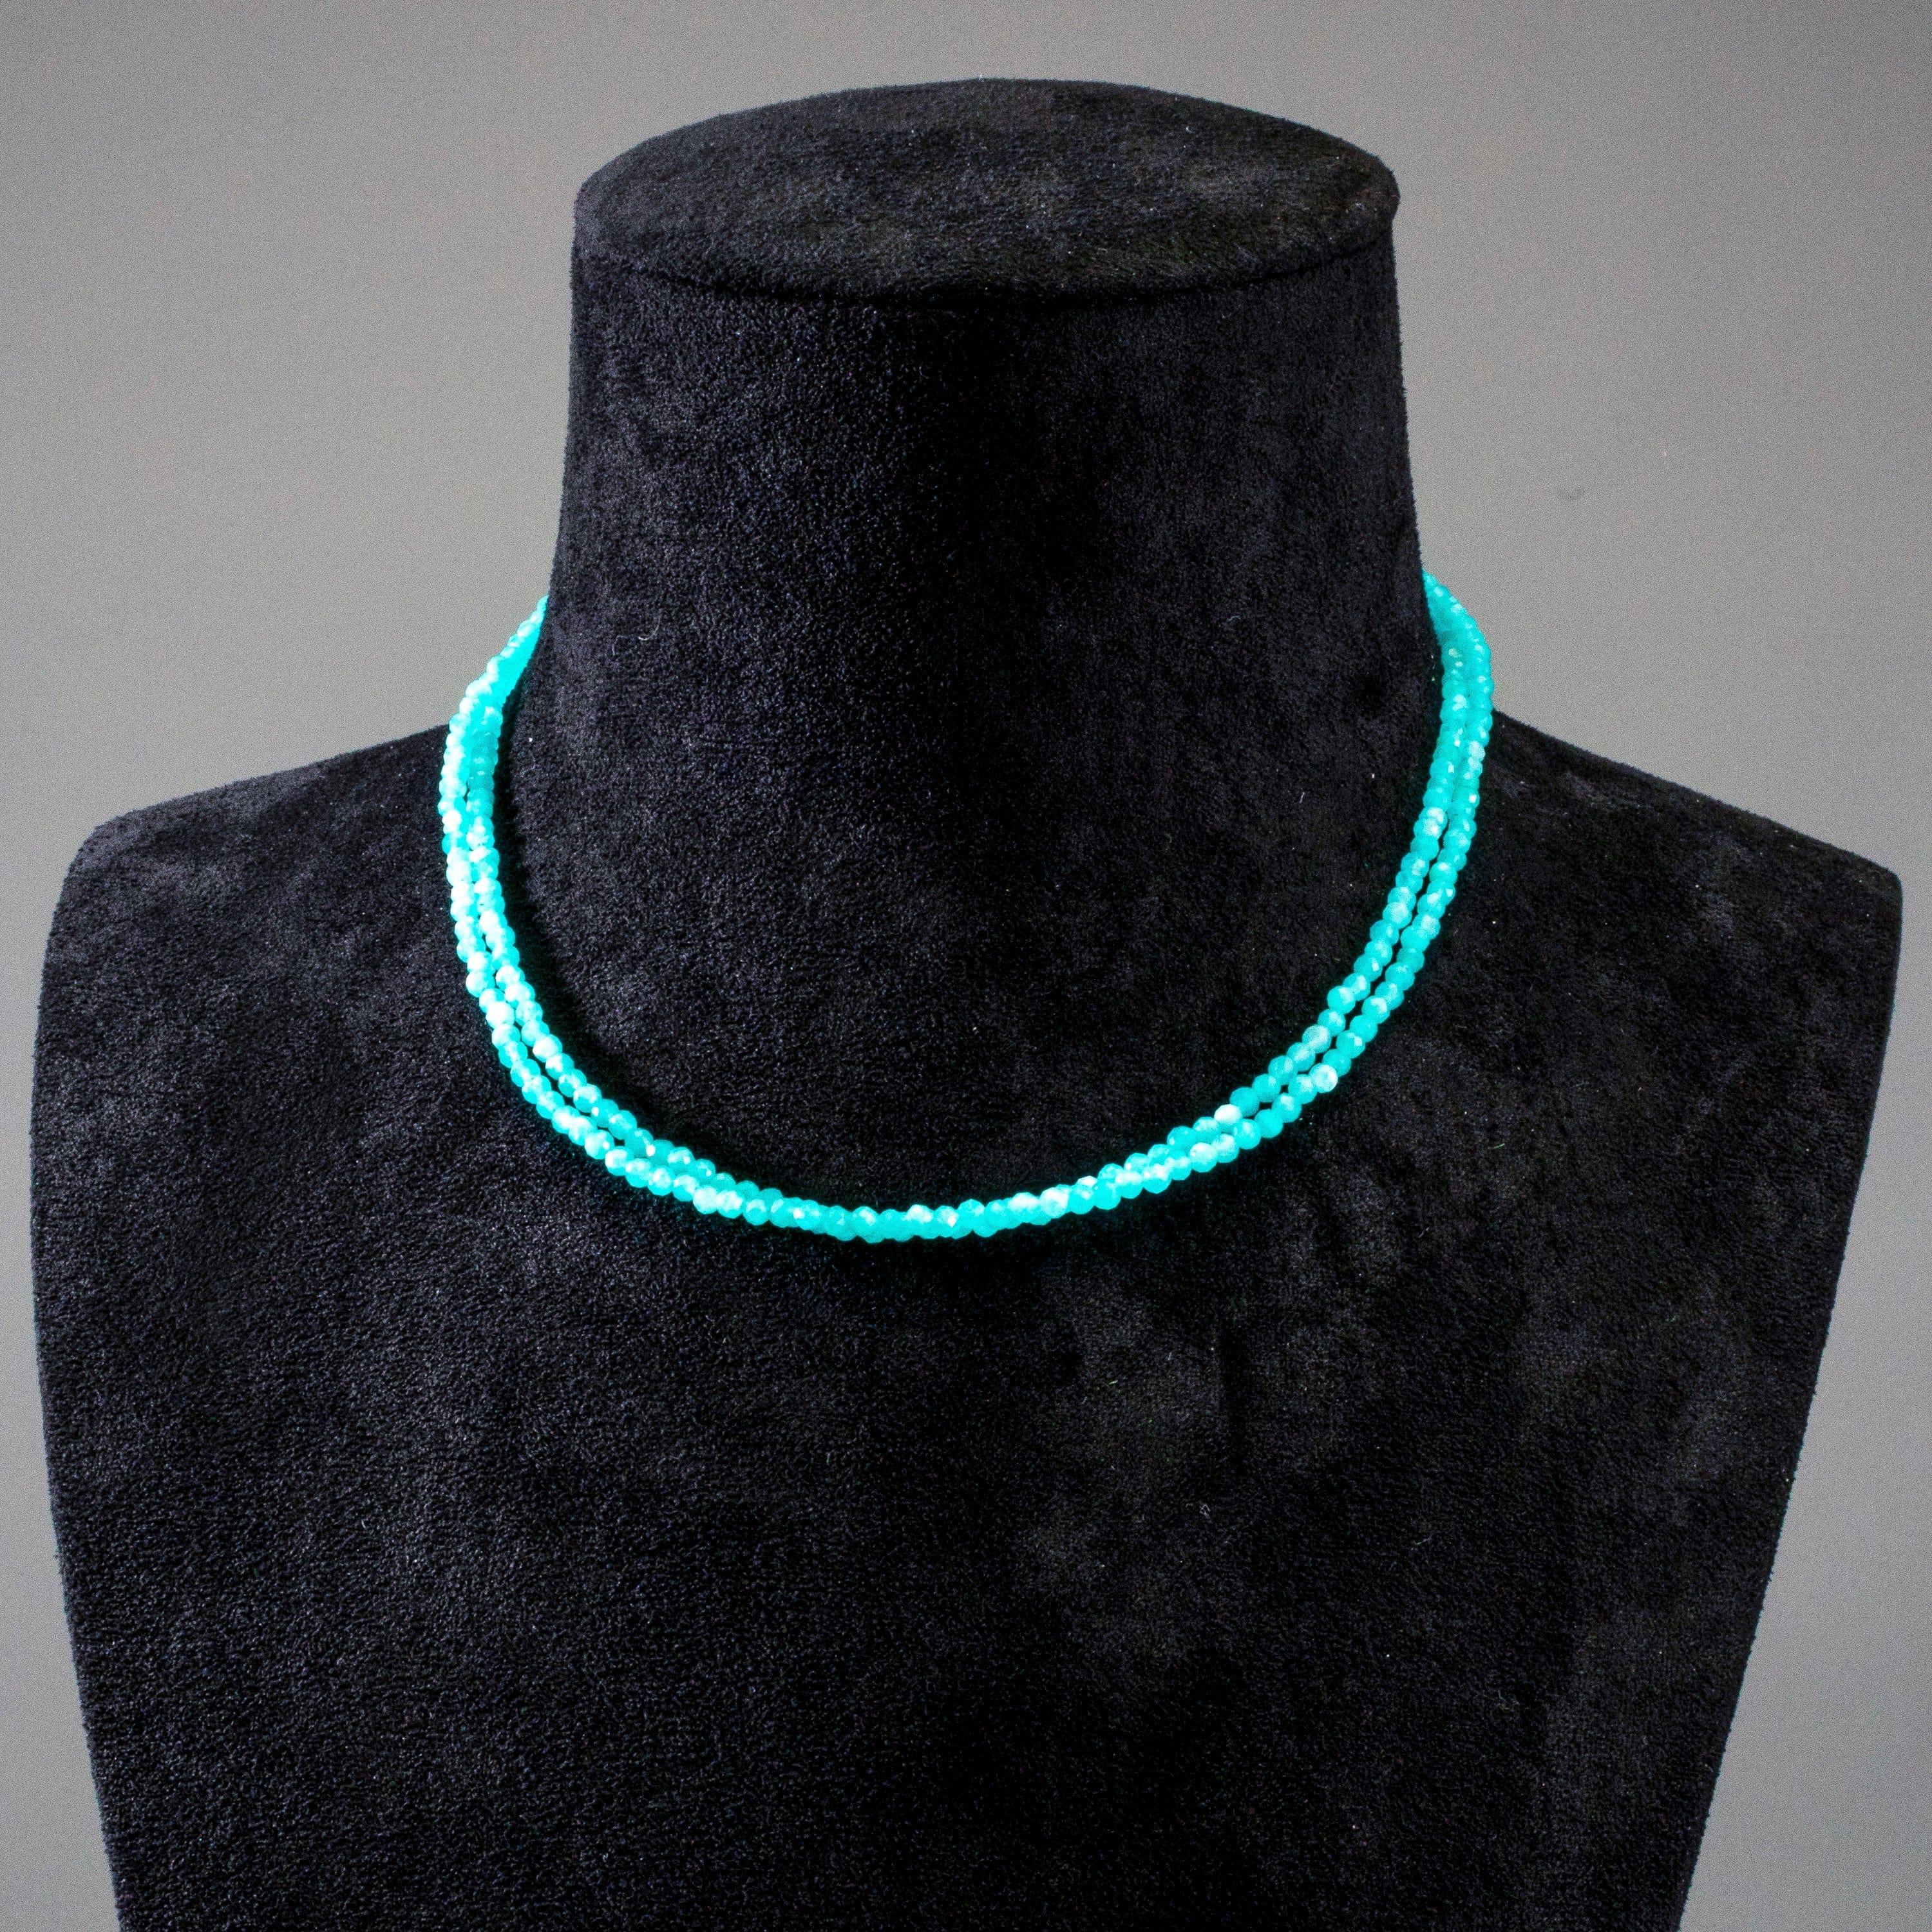 KALIFANO Gemstone Jewelry 3mm Amazonite Faceted 31" Necklace / Multi Wrap Bracelet N3-79S-AZ